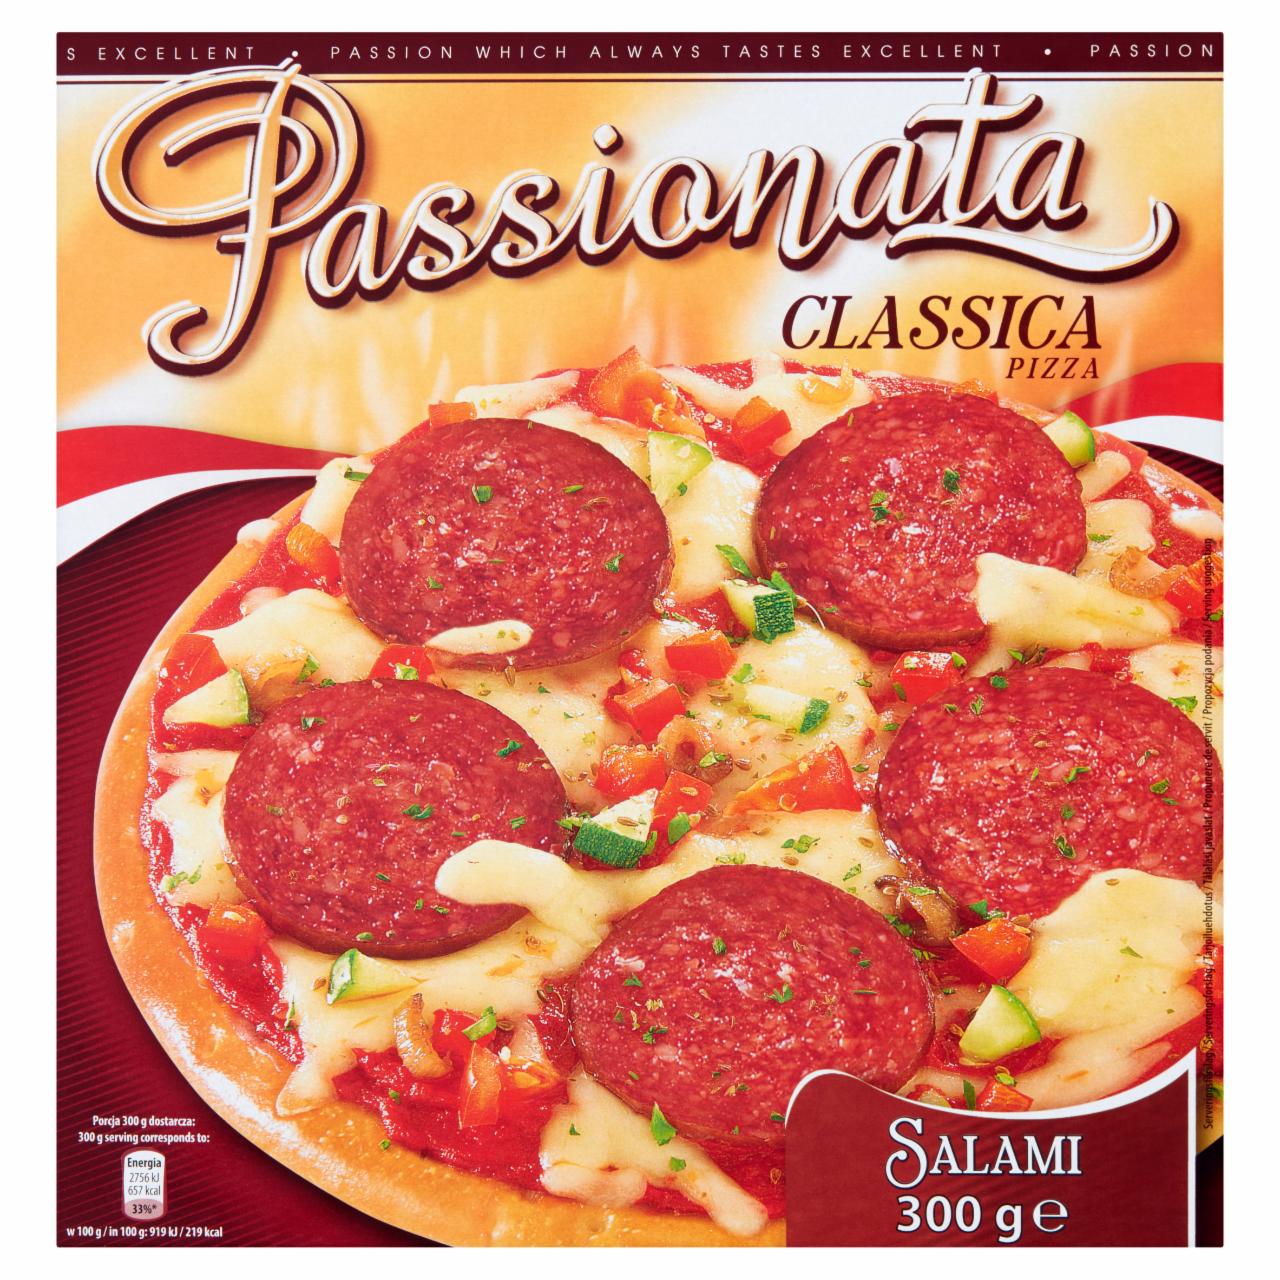 Képek - Passionata Classica Salami gyorsfagyasztott pizza füstölt, sertés szalámival 300 g